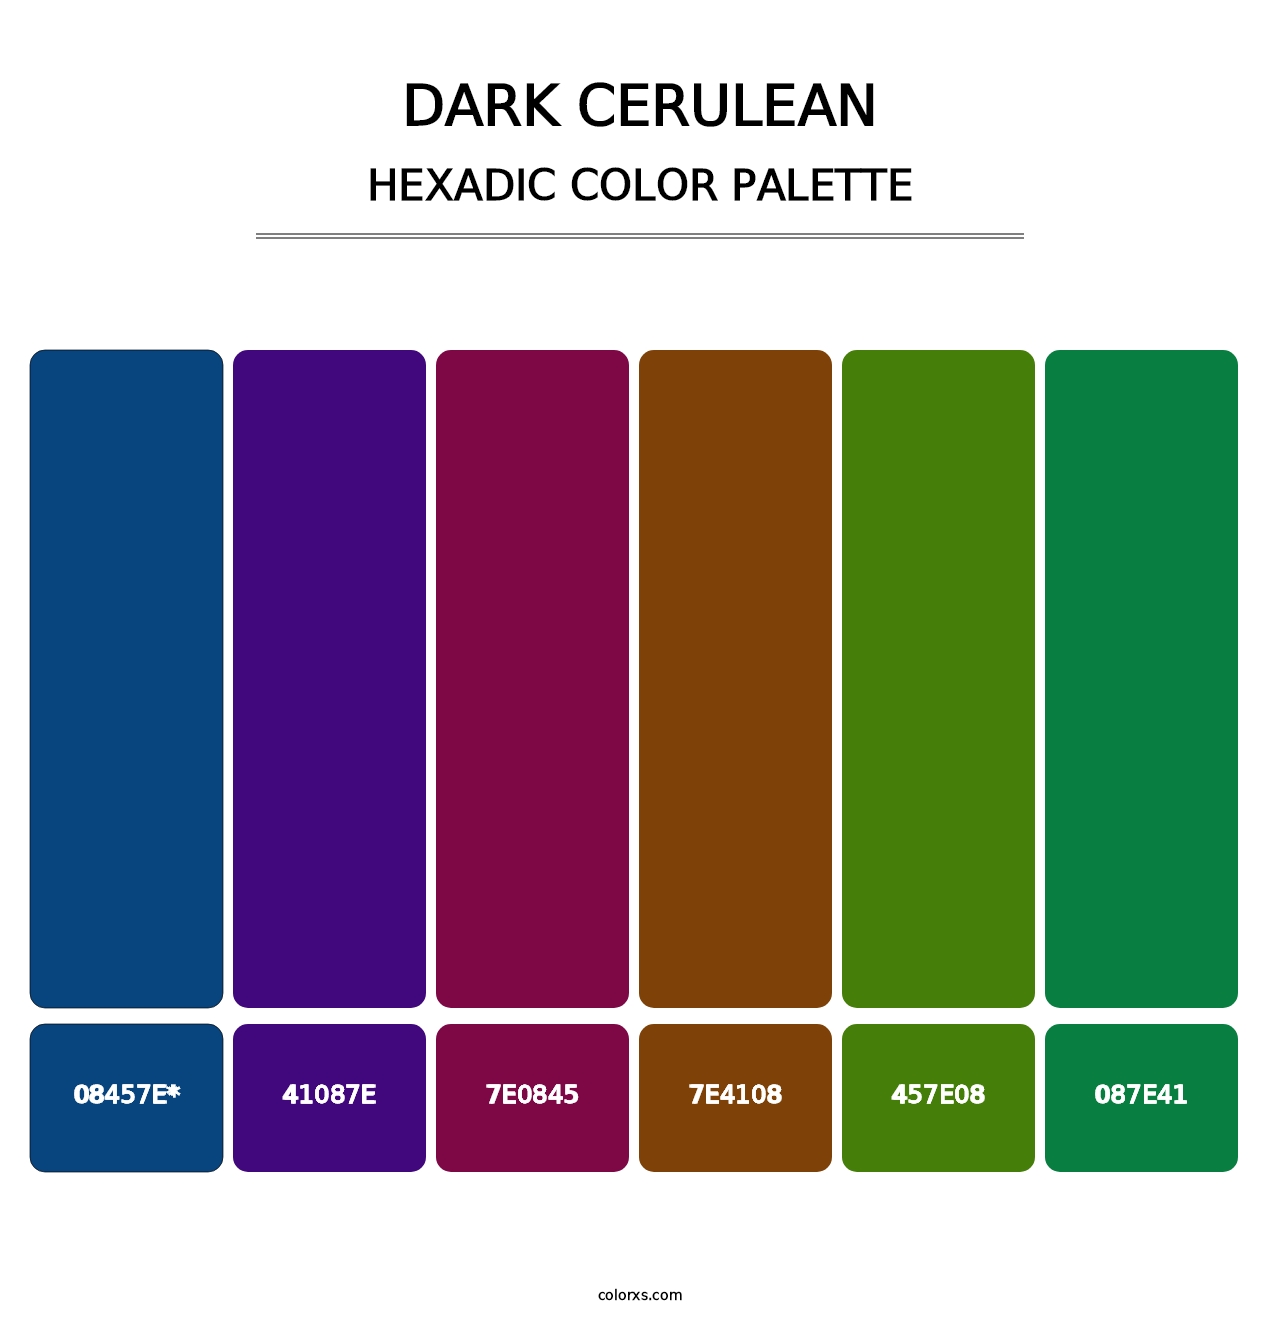 Dark Cerulean - Hexadic Color Palette